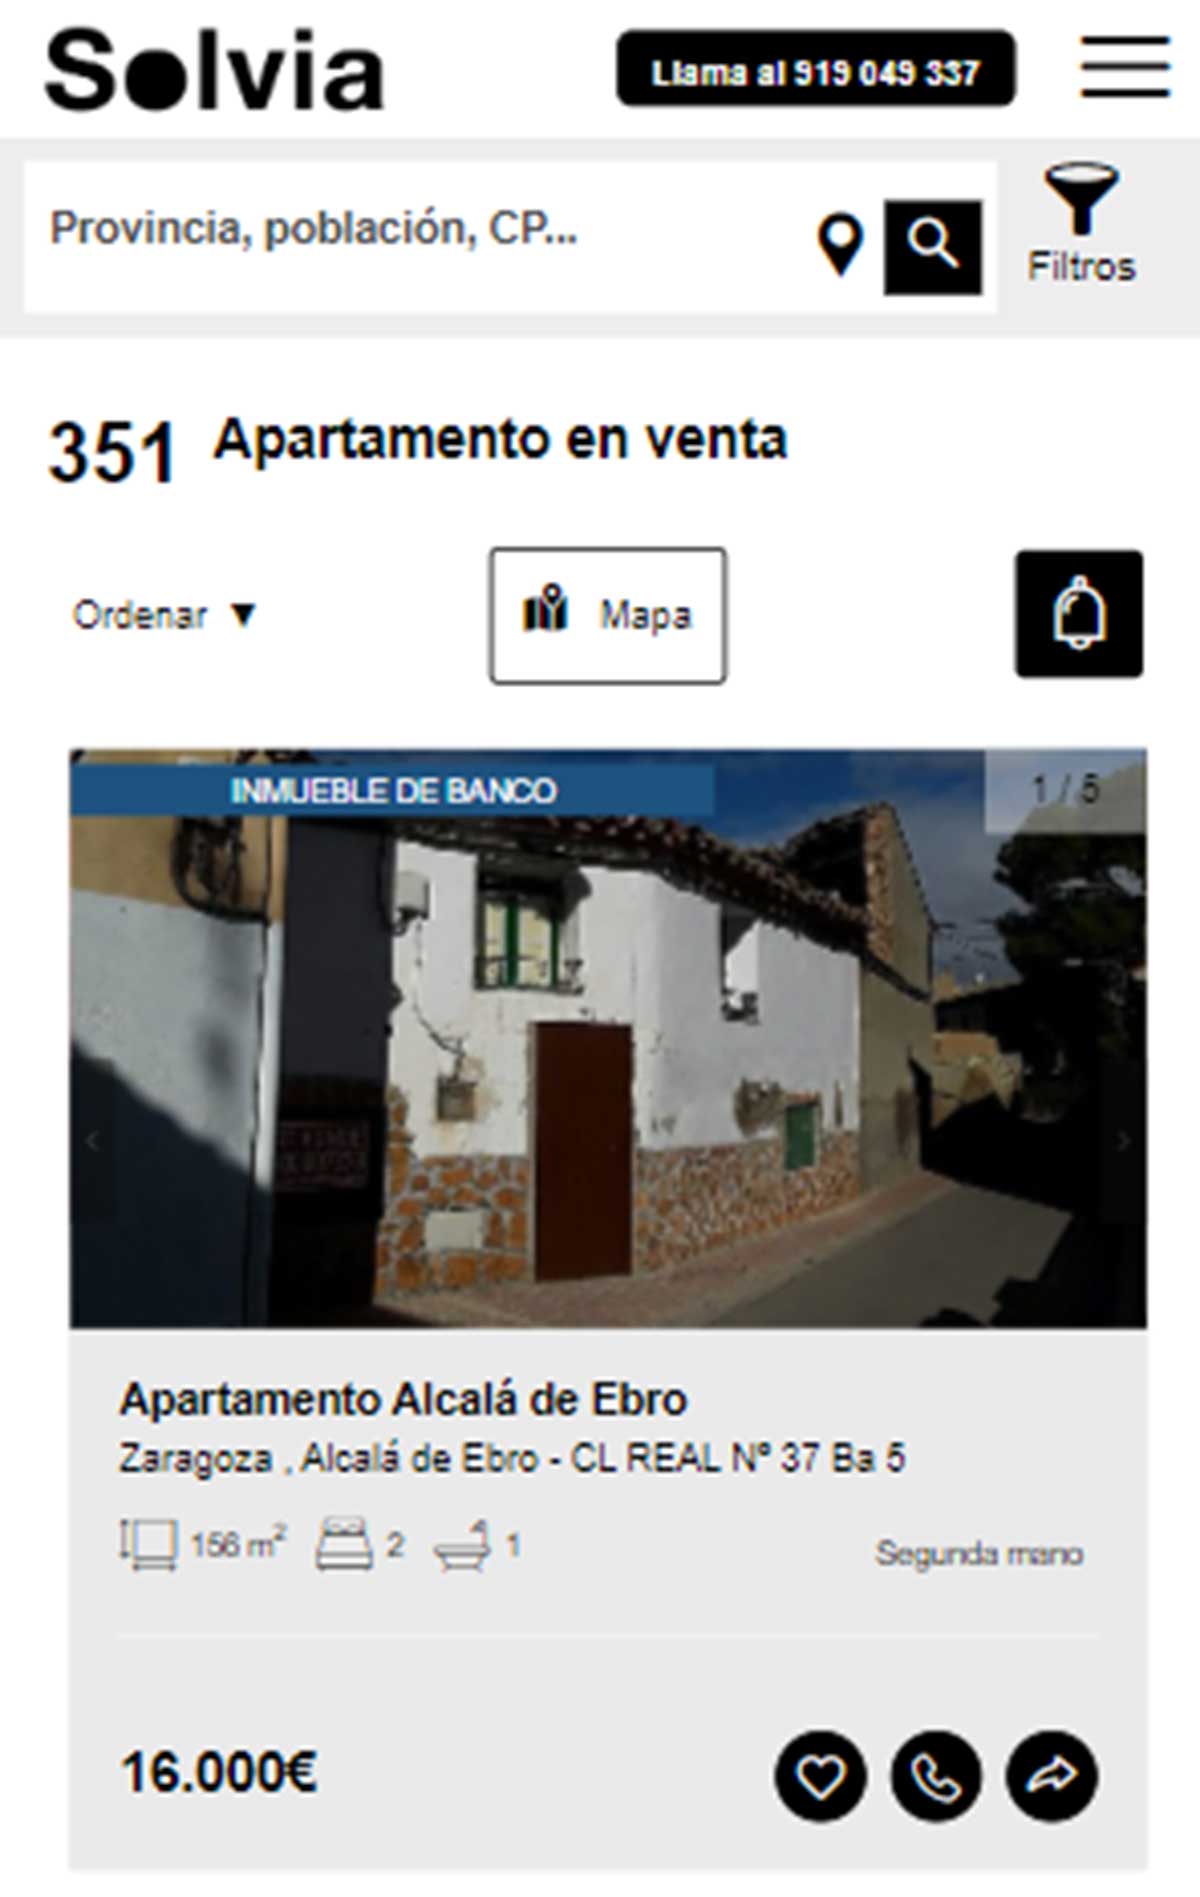 Apartamento a la venta por 16.000 euros